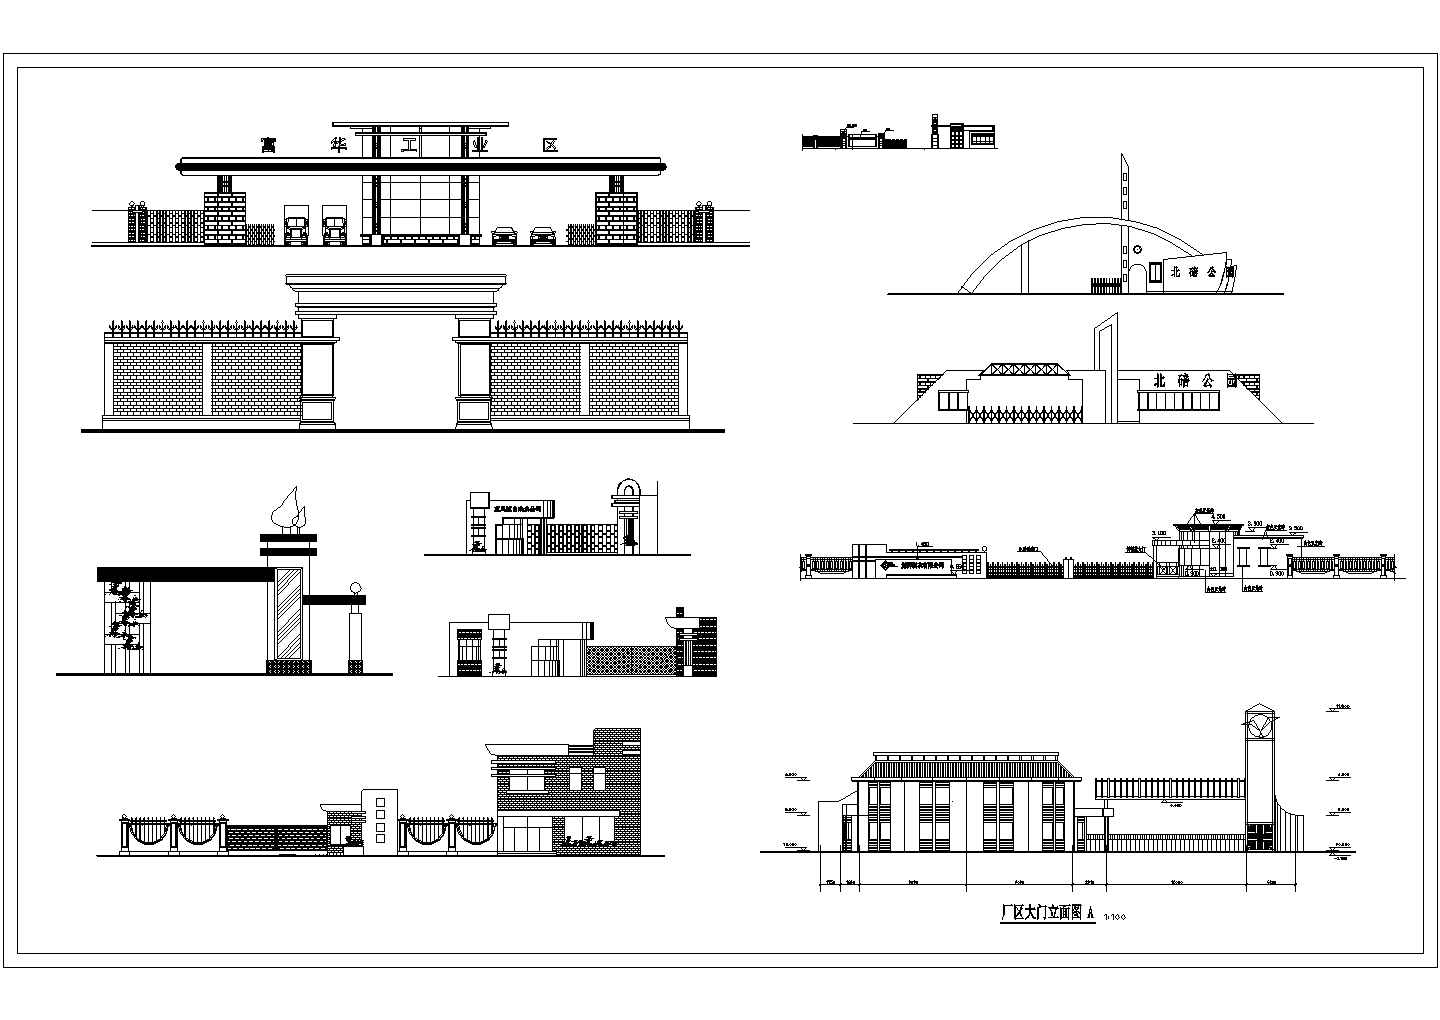 贵州省西南城市某工业区大门设计方案图